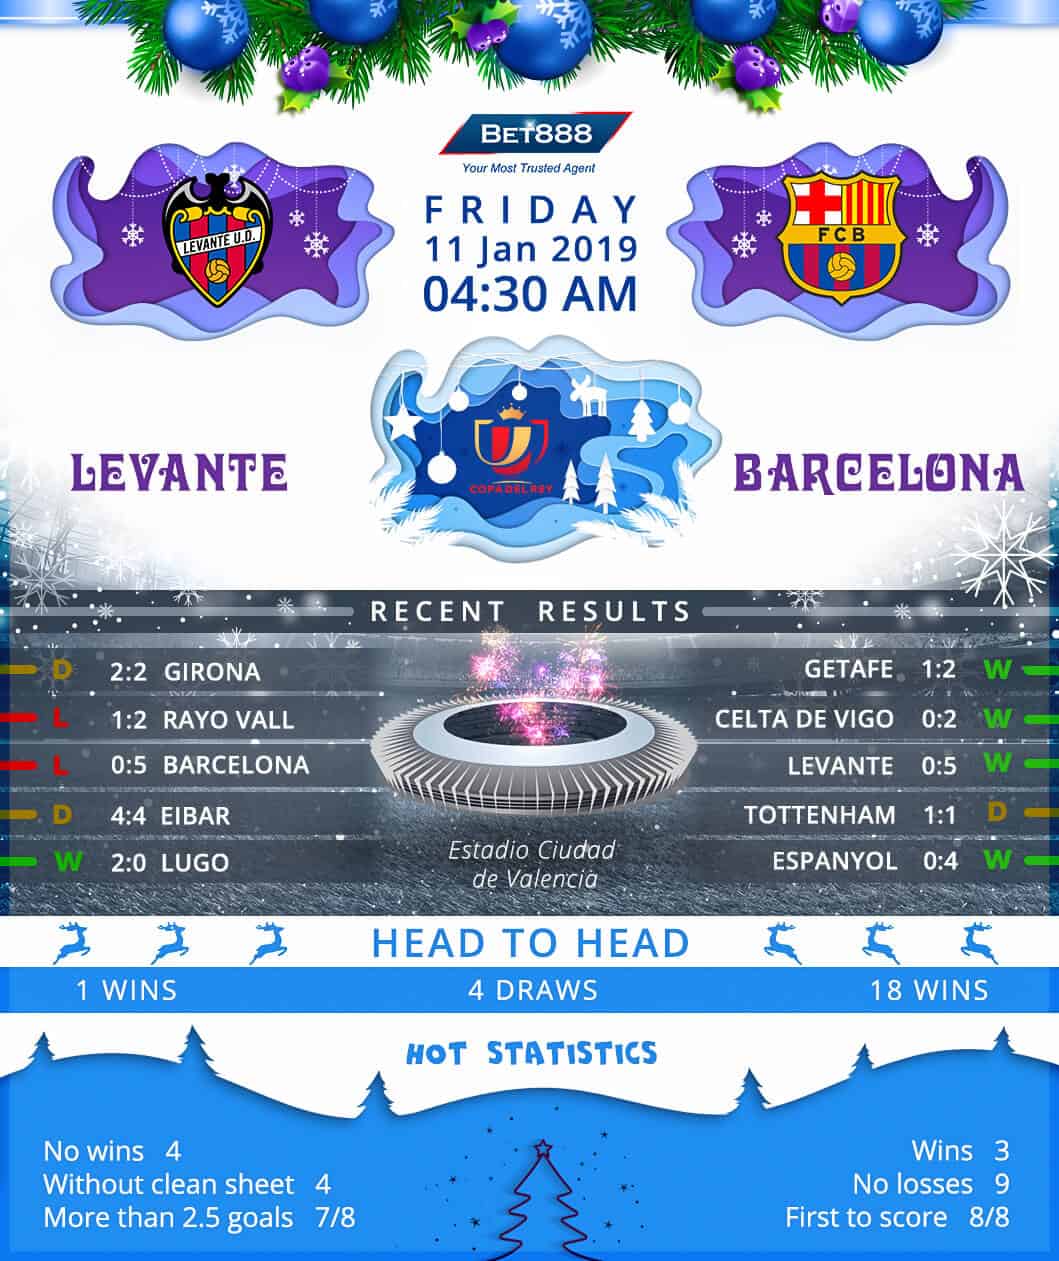 Levante vs Barcelona 11/01/19